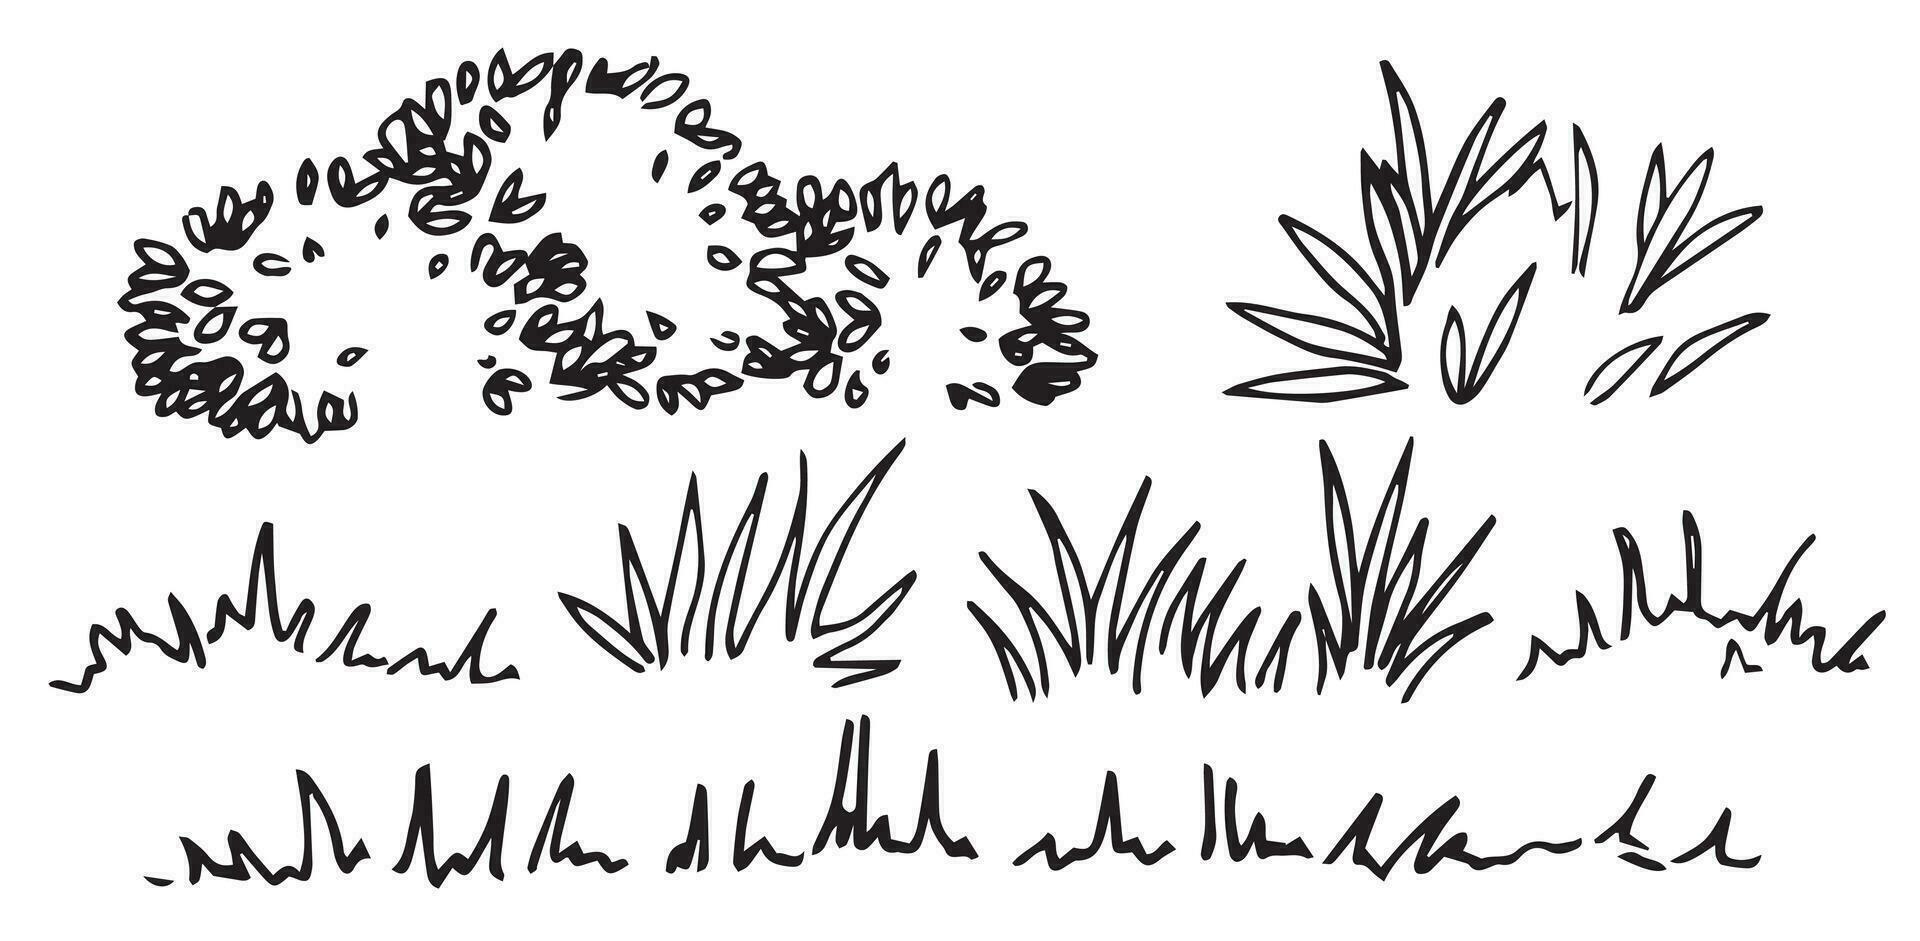 uppsättning av buskar, gräs och gräsmatta, hand teckning, frontal se. arkitektonisk bläck teckning, vektor. vektor